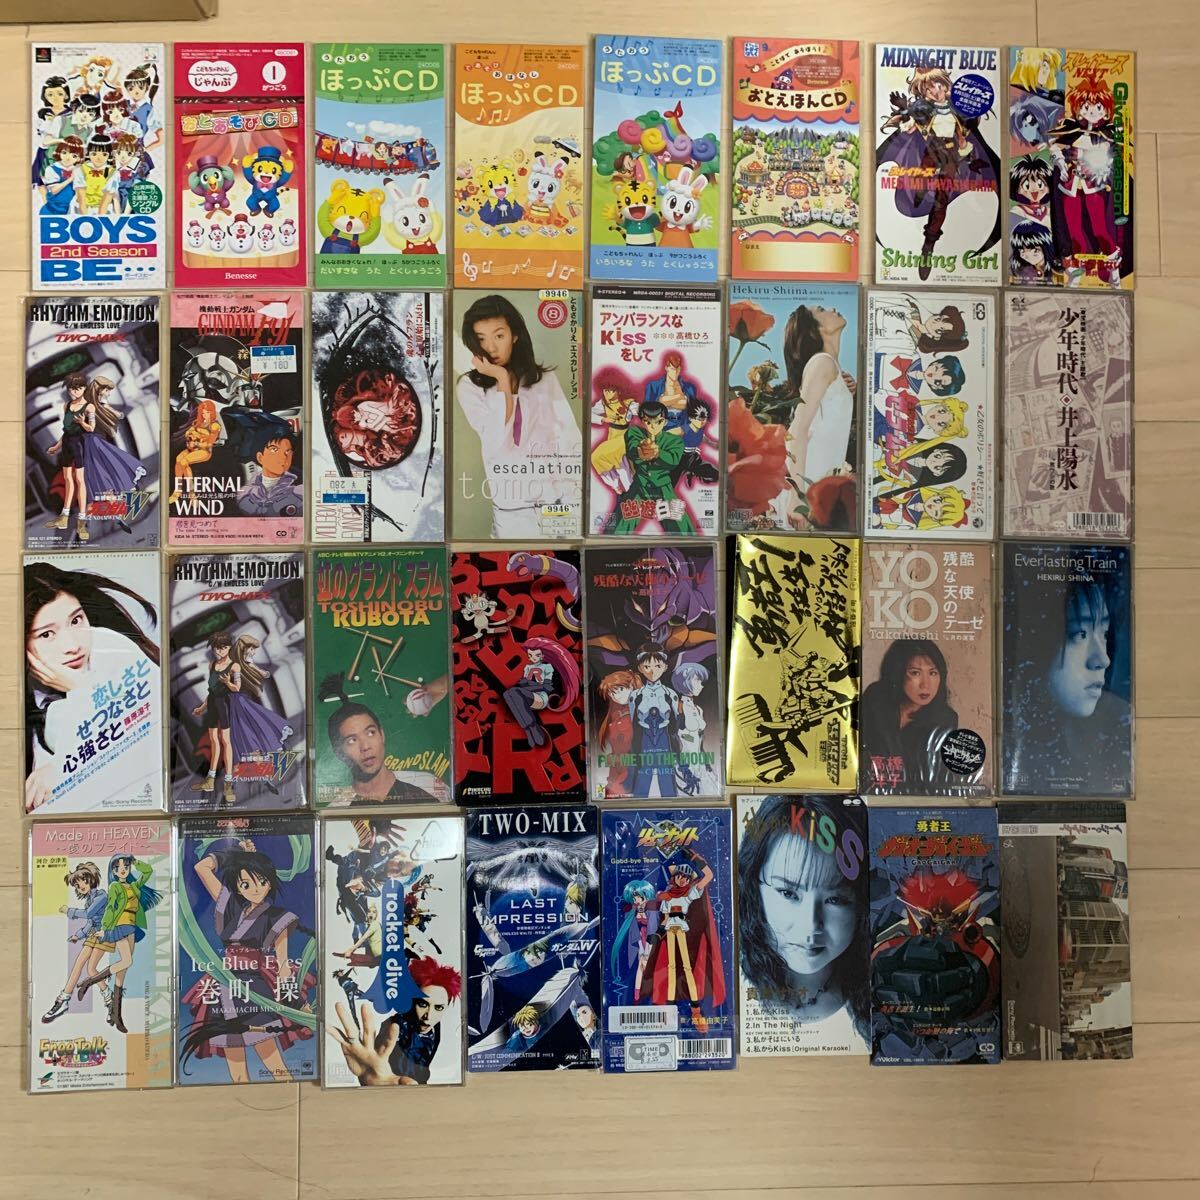 8cm аниме серия CD много комплект суммировать голос актера Ranma 1/2 Yu Yu Hakusho Японская музыка Pokemon Gundam GaoGaiGar Sailor Moon подлинная вещь 40 8cmcd